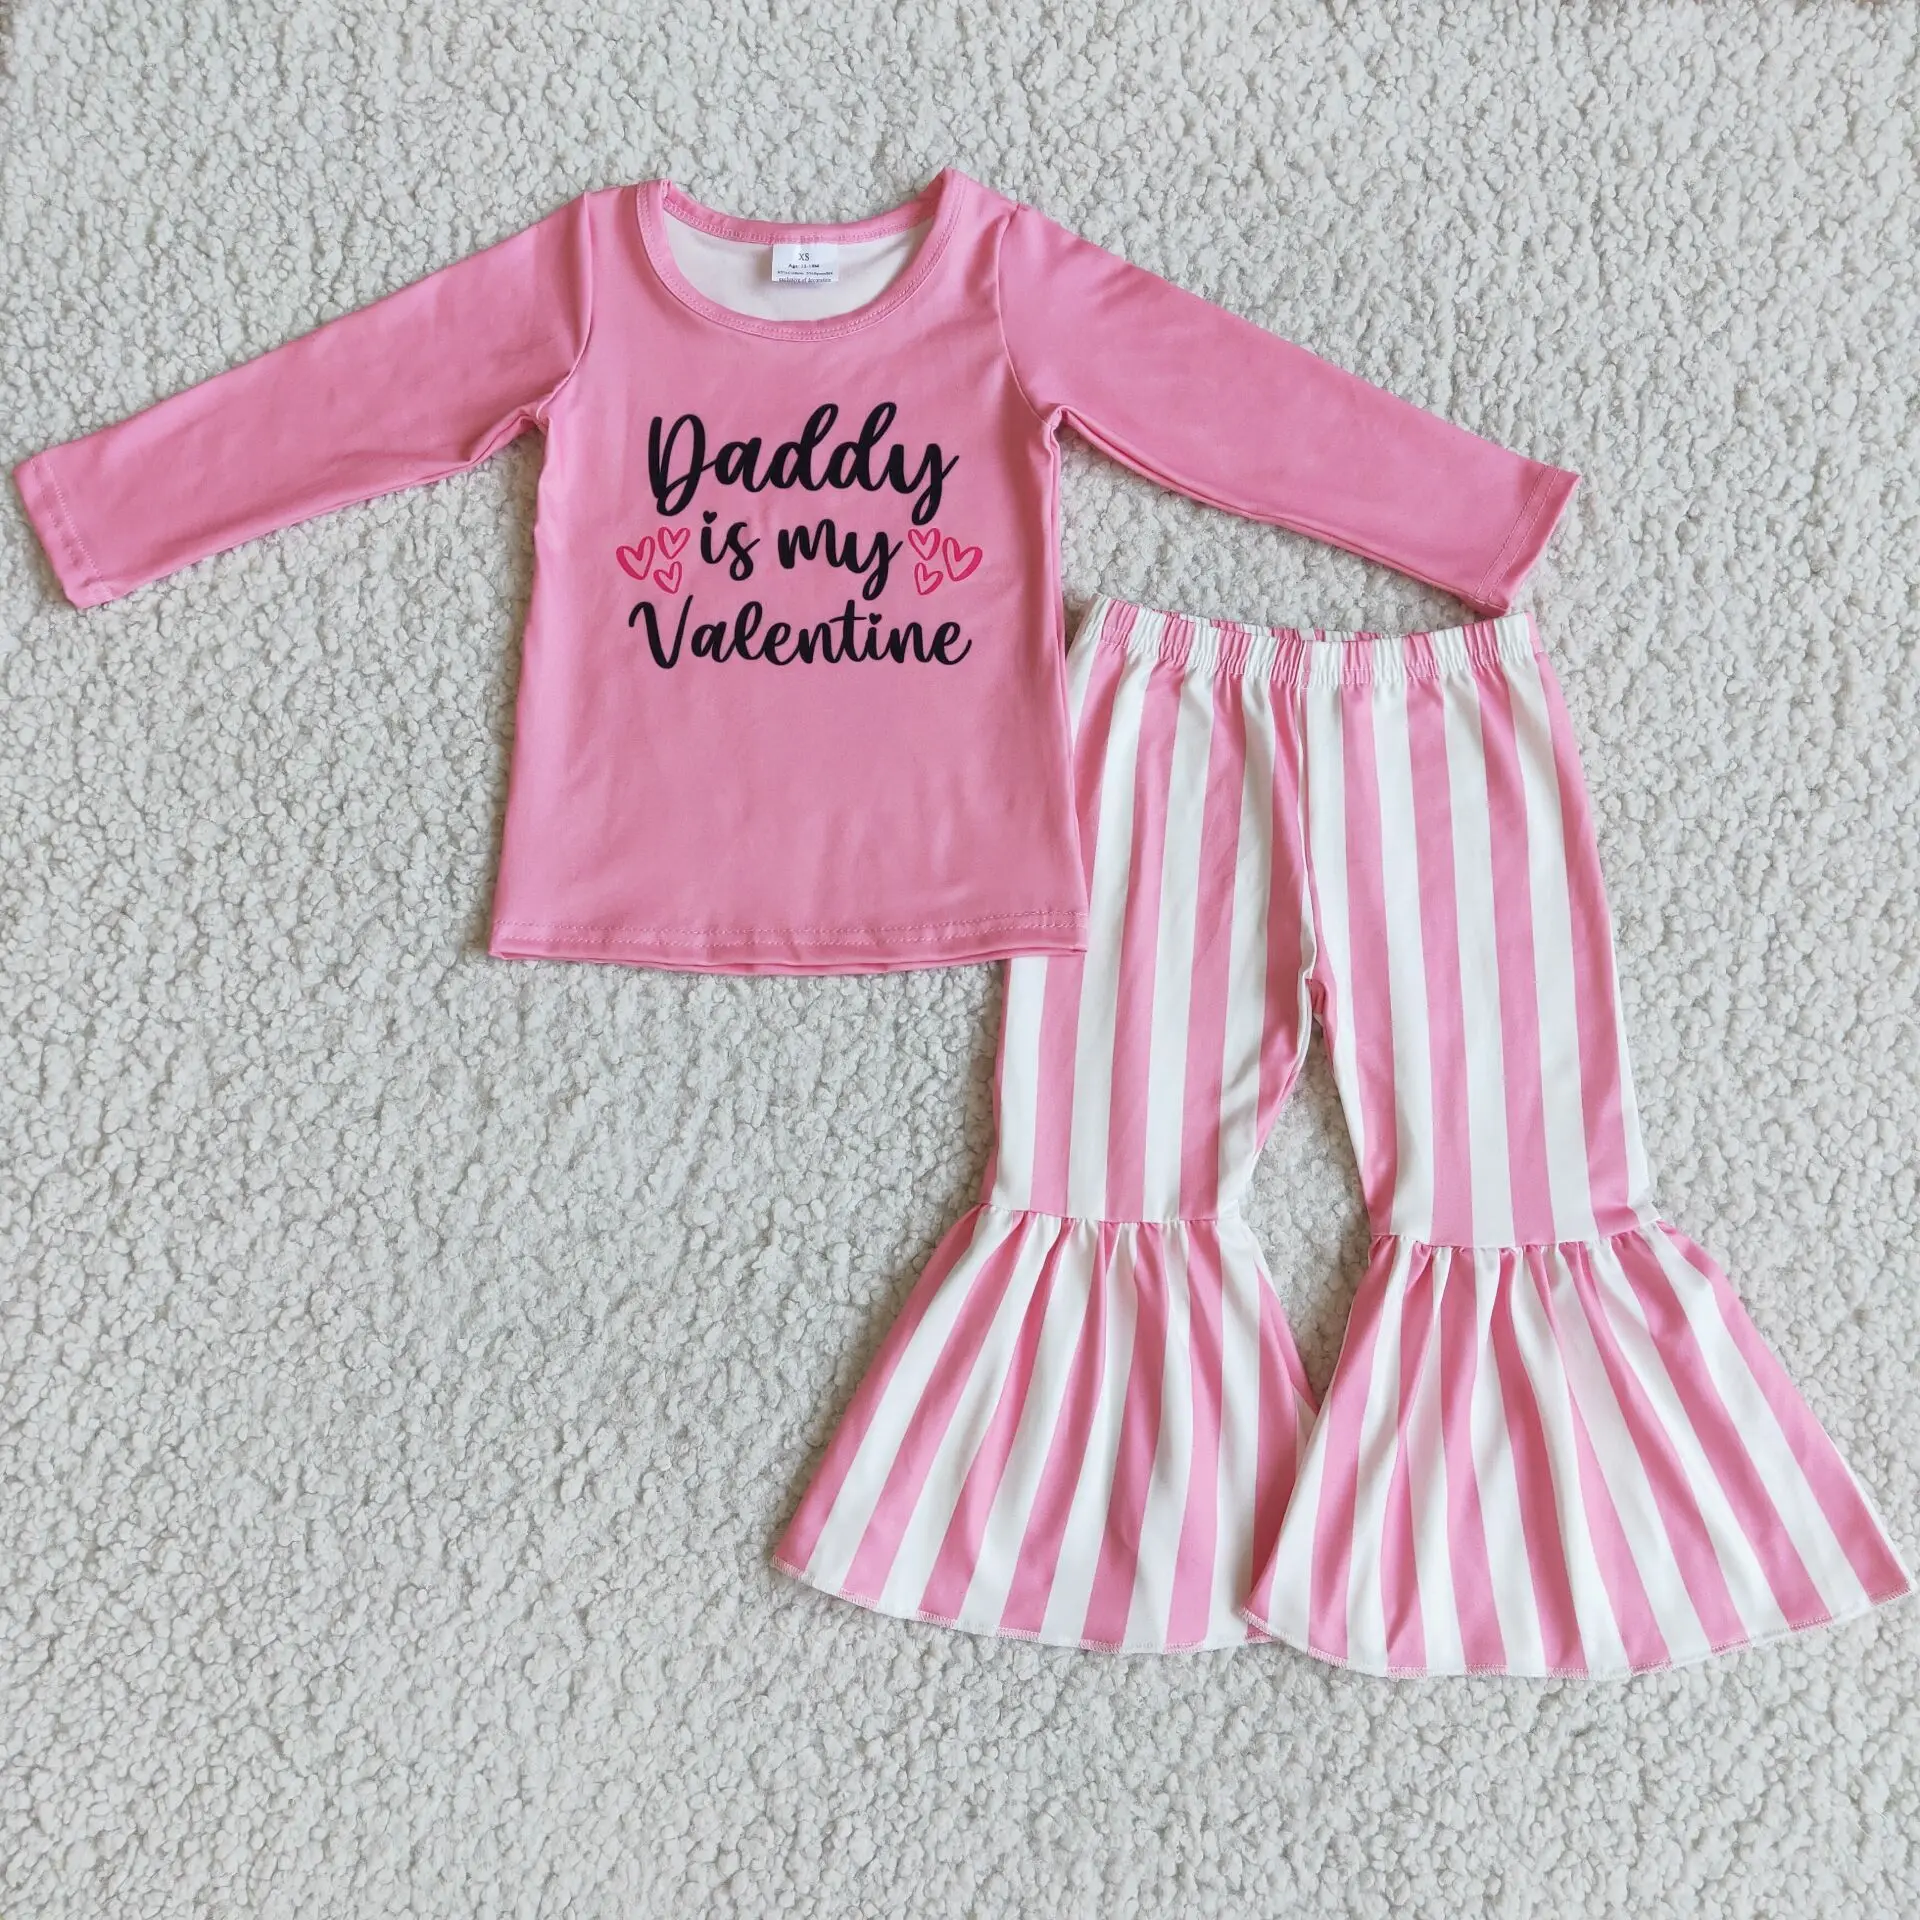 

Новый модный розовый наряд для девочек, эксклюзивный комплект одежды папы на День святого Валентина